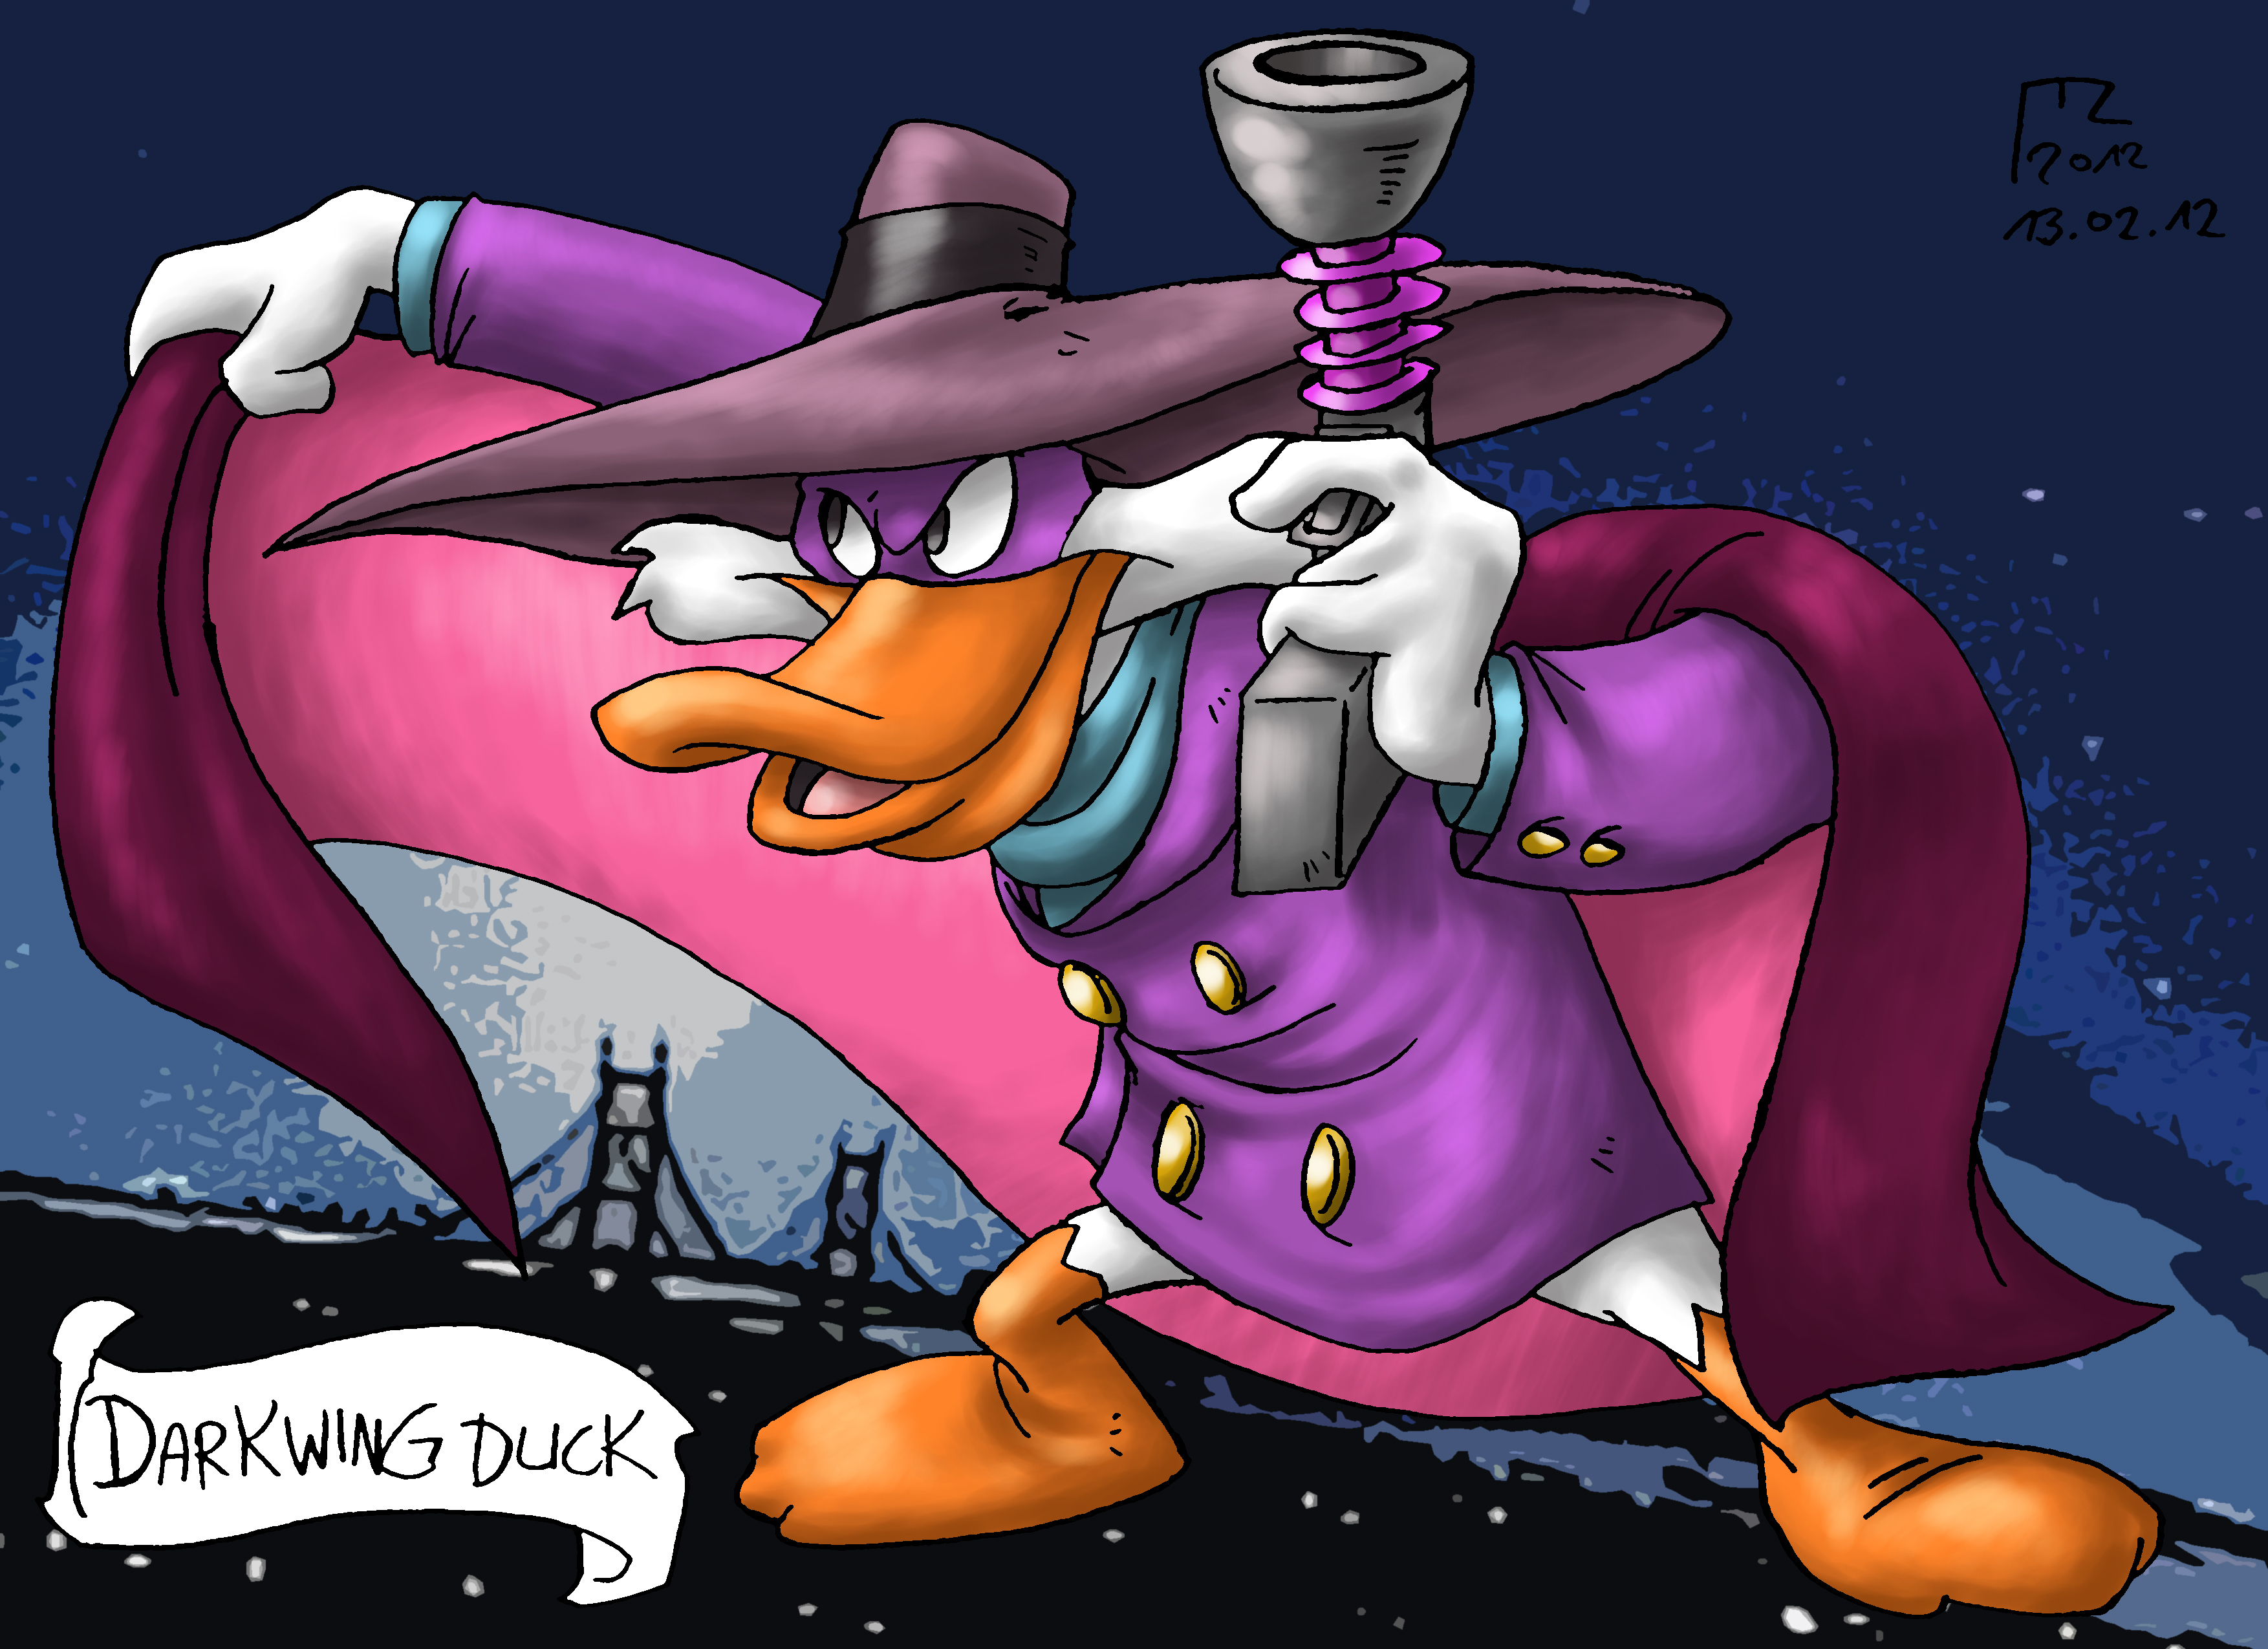 Darkwing Duck #18